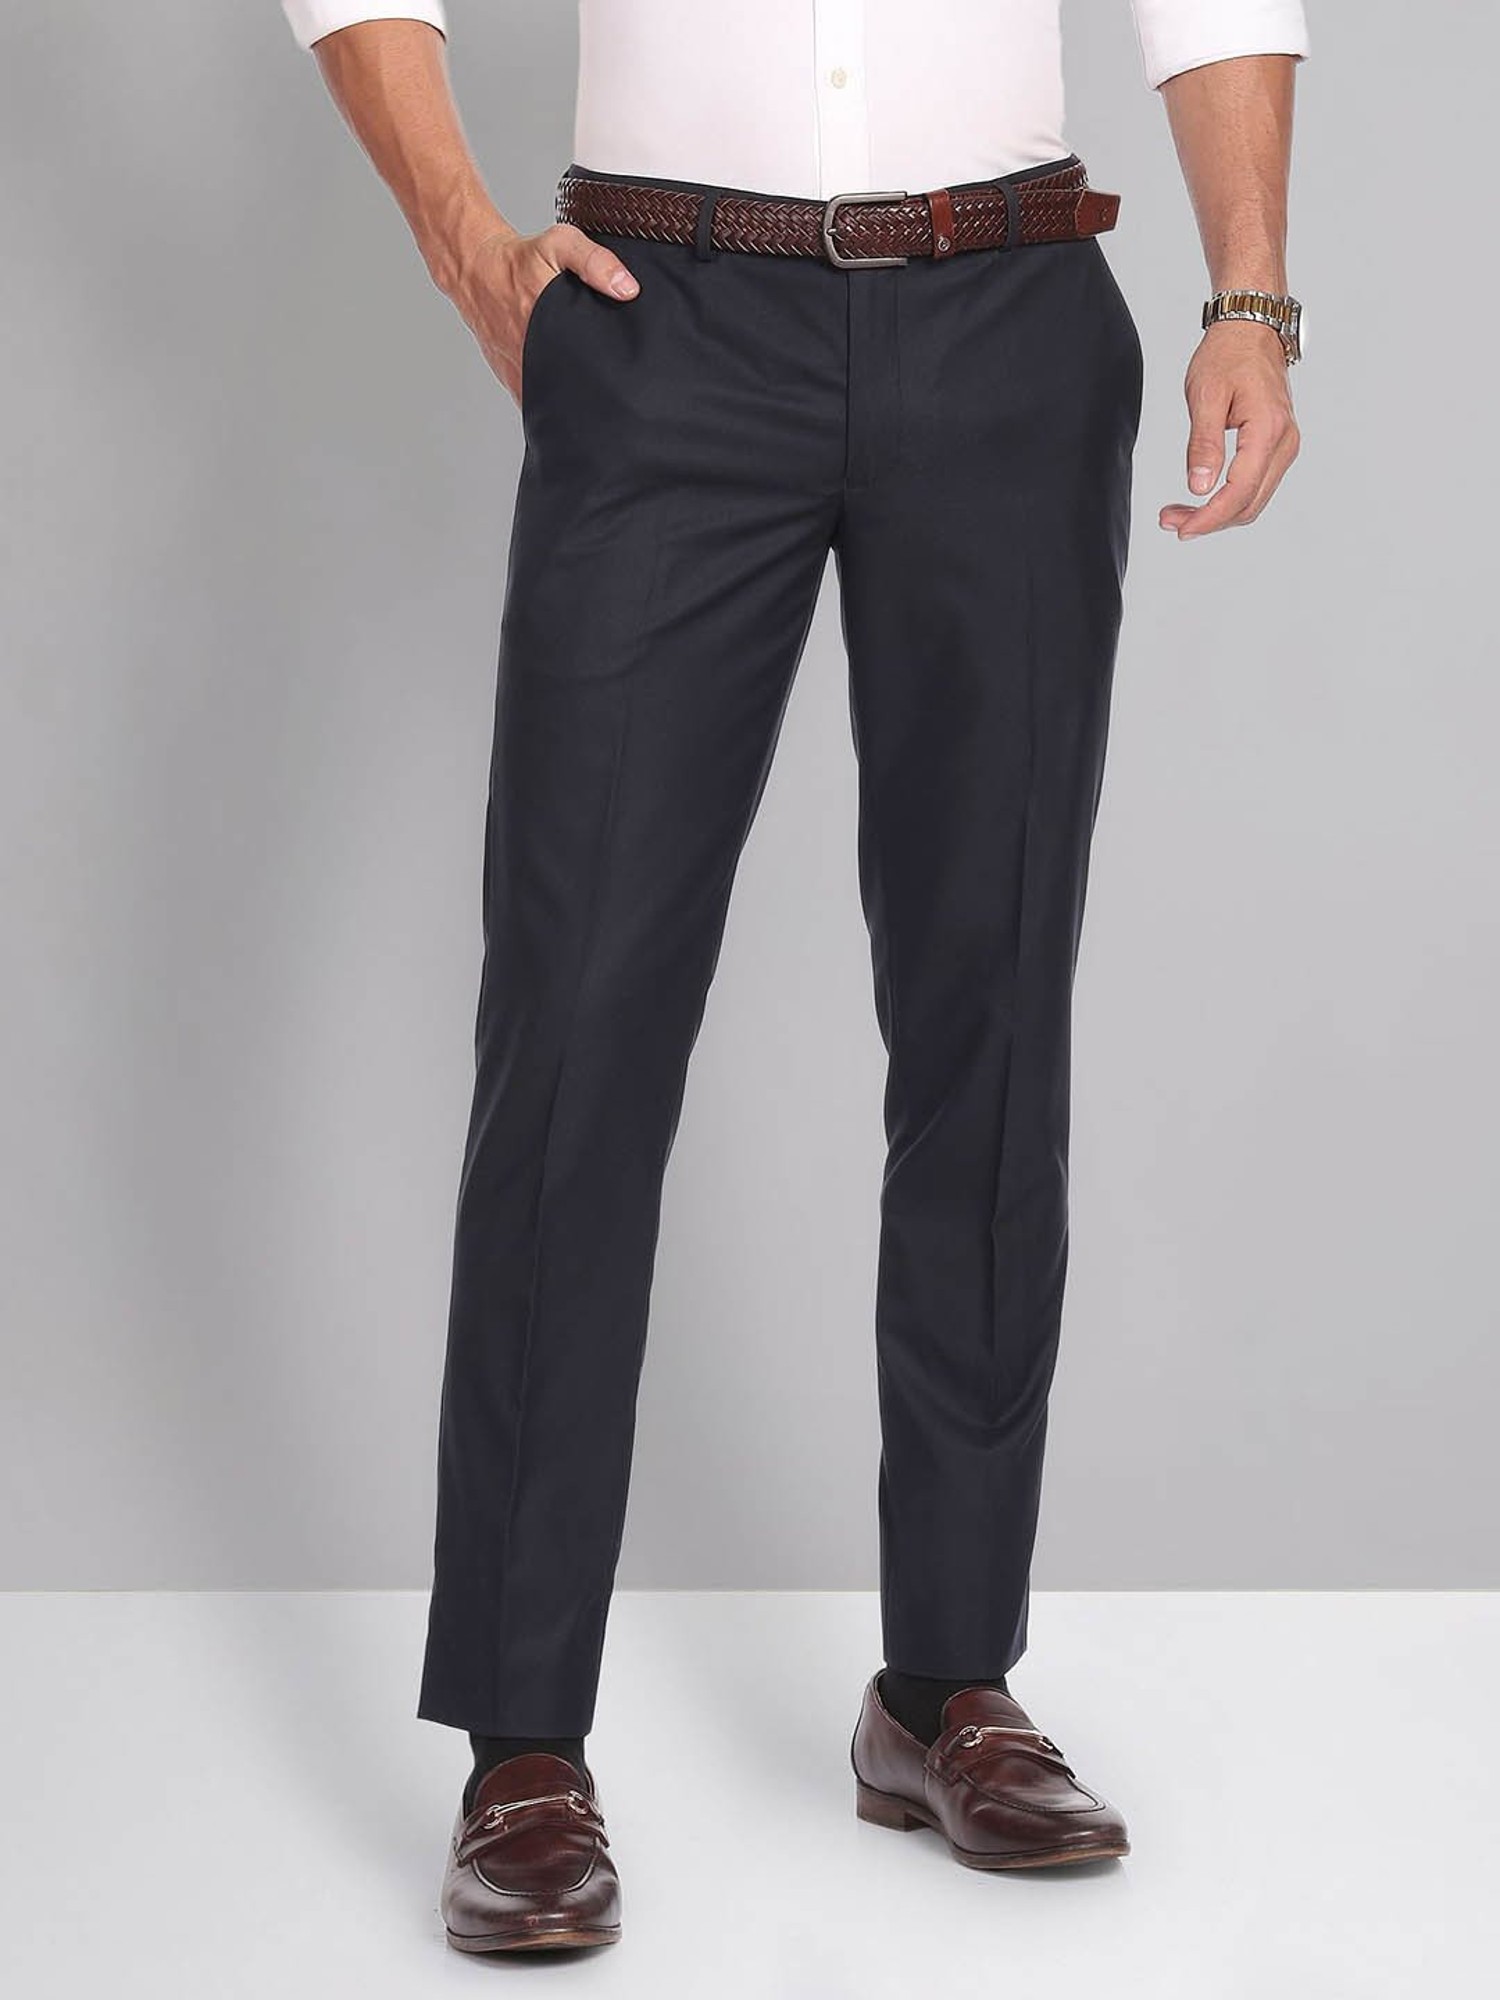 fcityin  Katro Black Formal Trouser For Mens  Ravishing Latest Men  Trousers